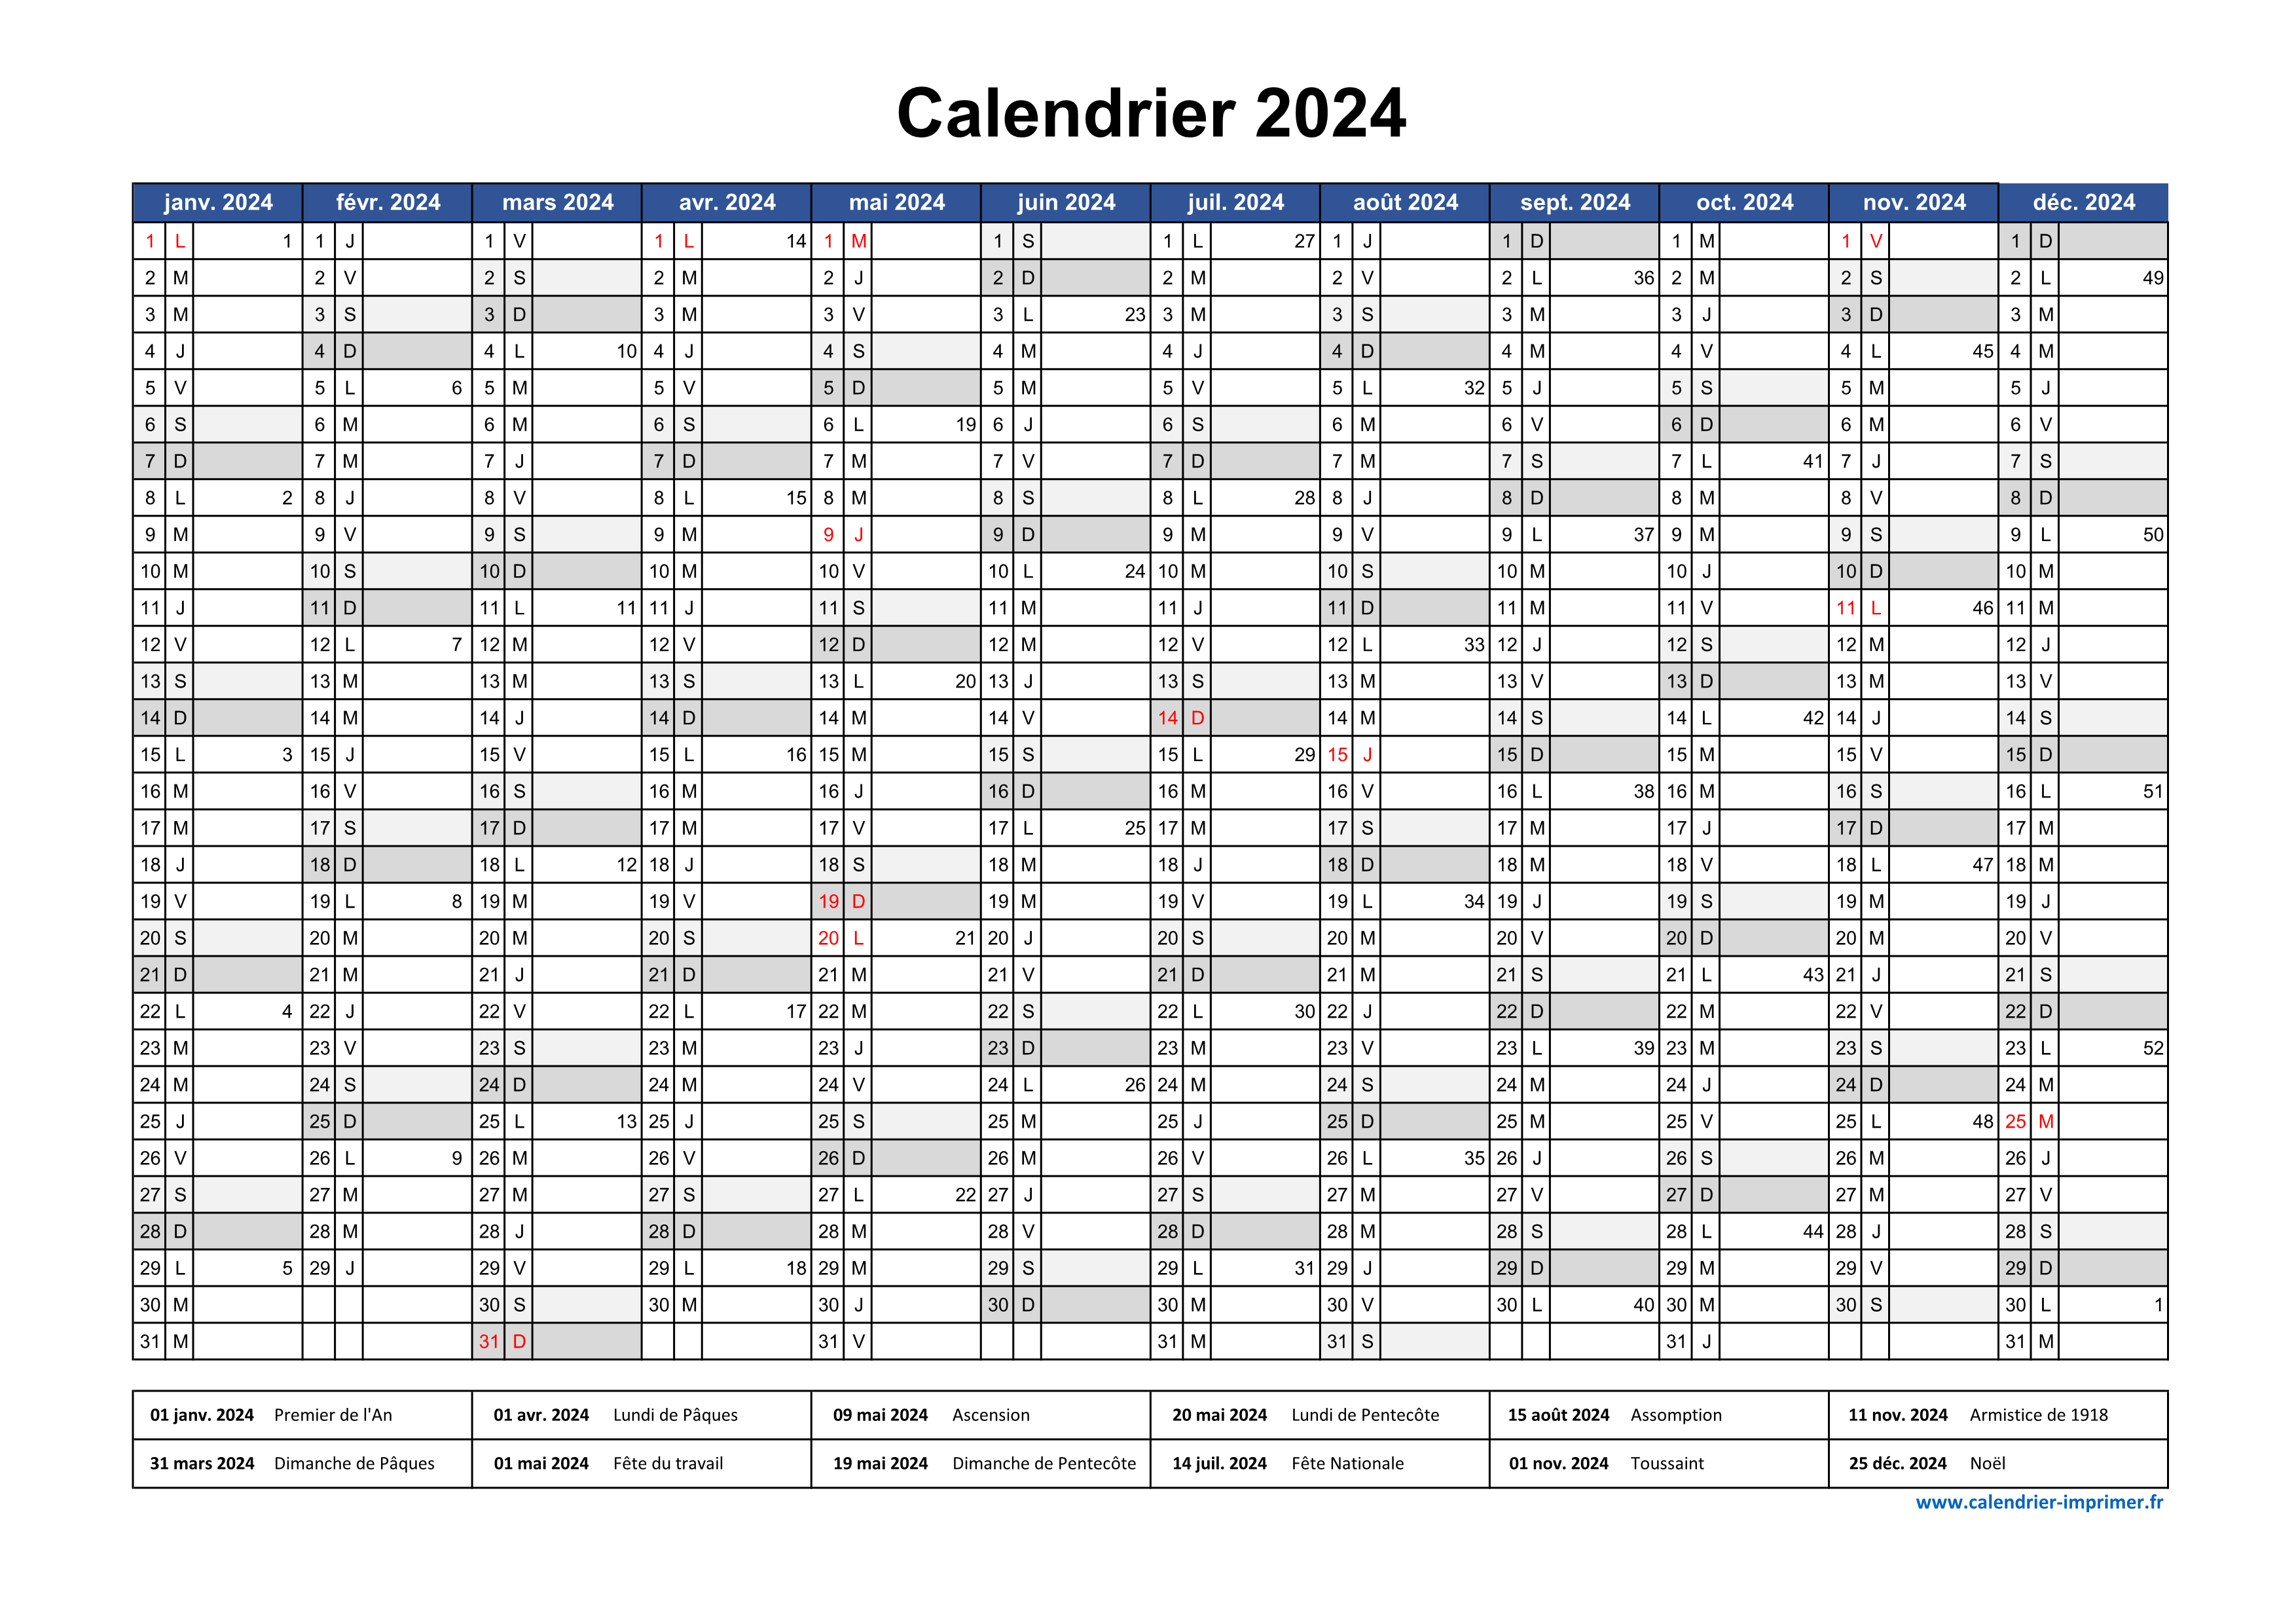 Calendrier de planification annuel 2024